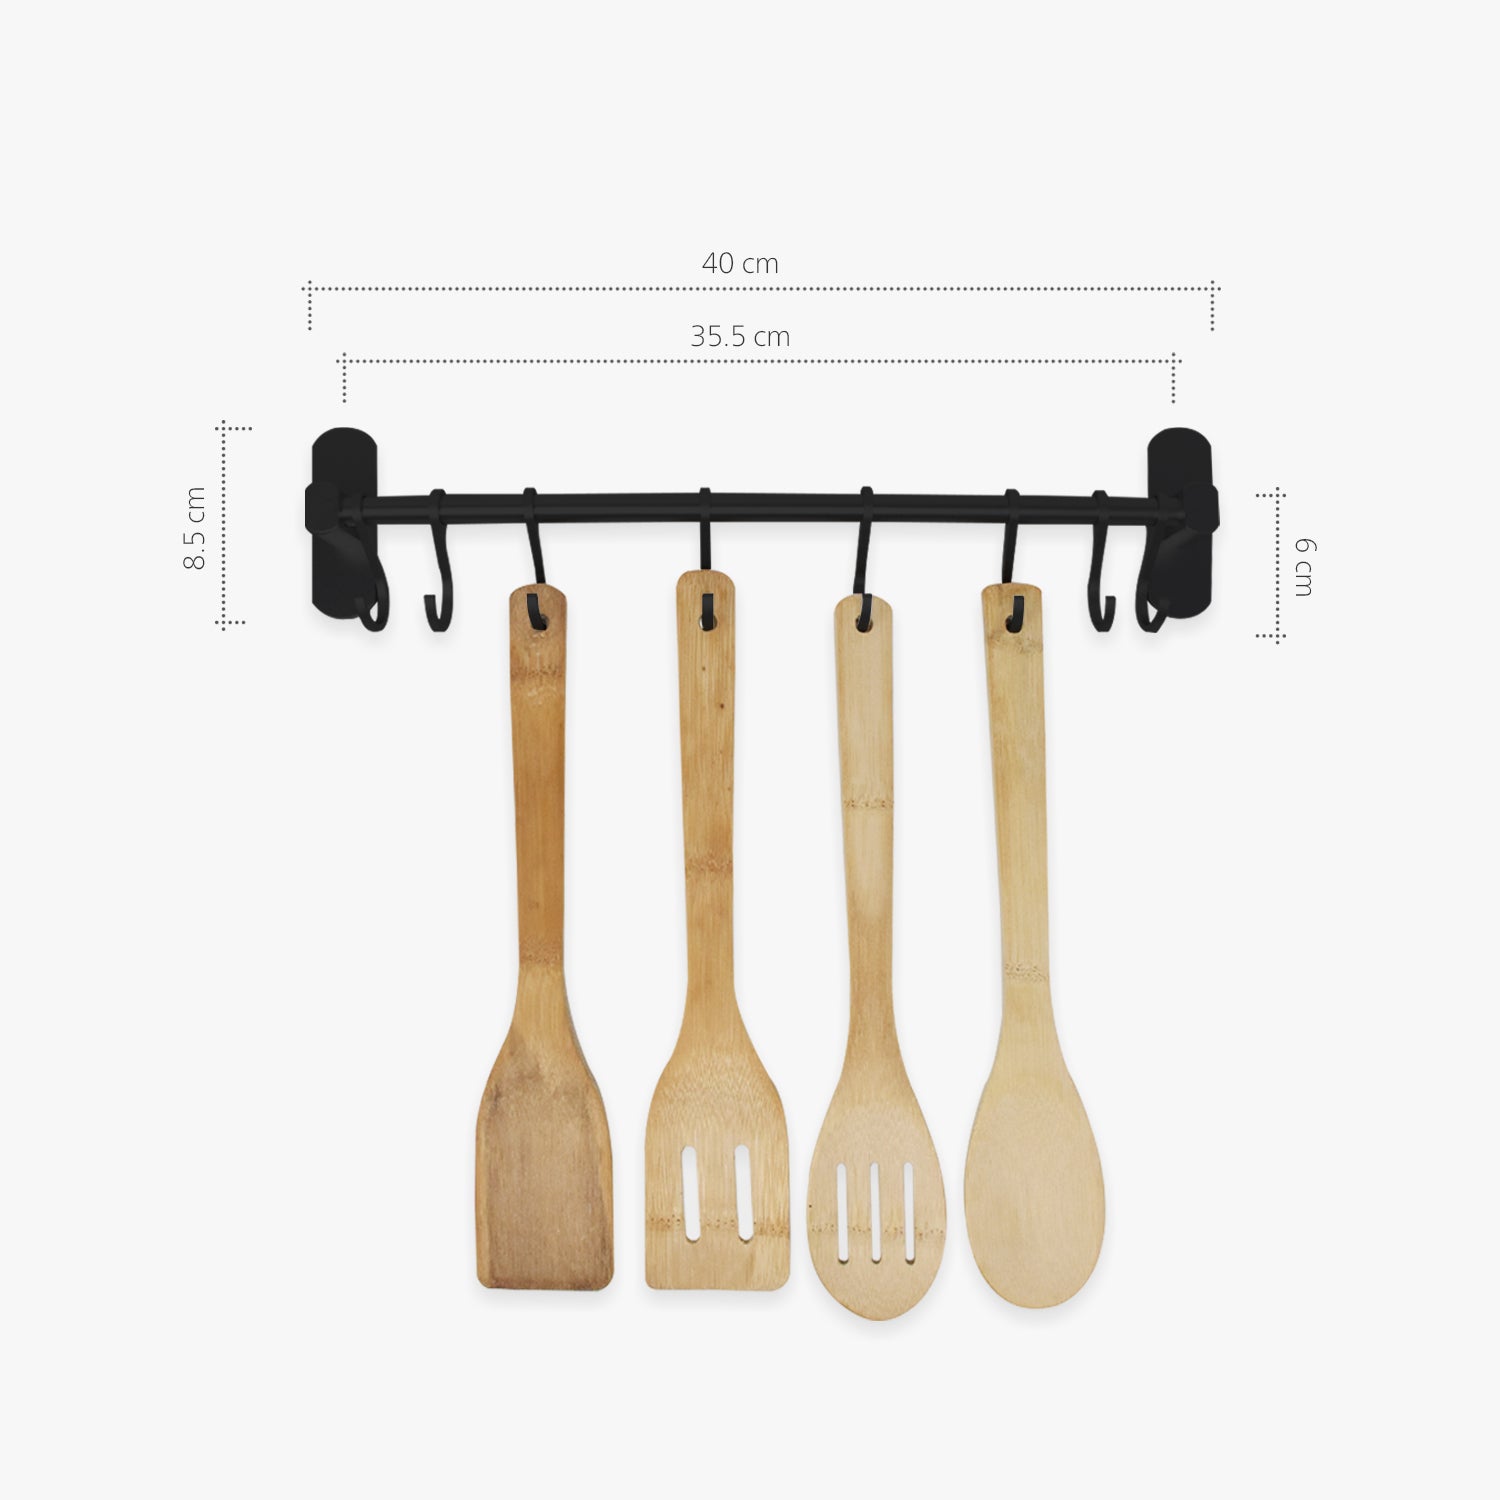 La práctica barra para utensilios de cocina Kitchen Today de Brabantia